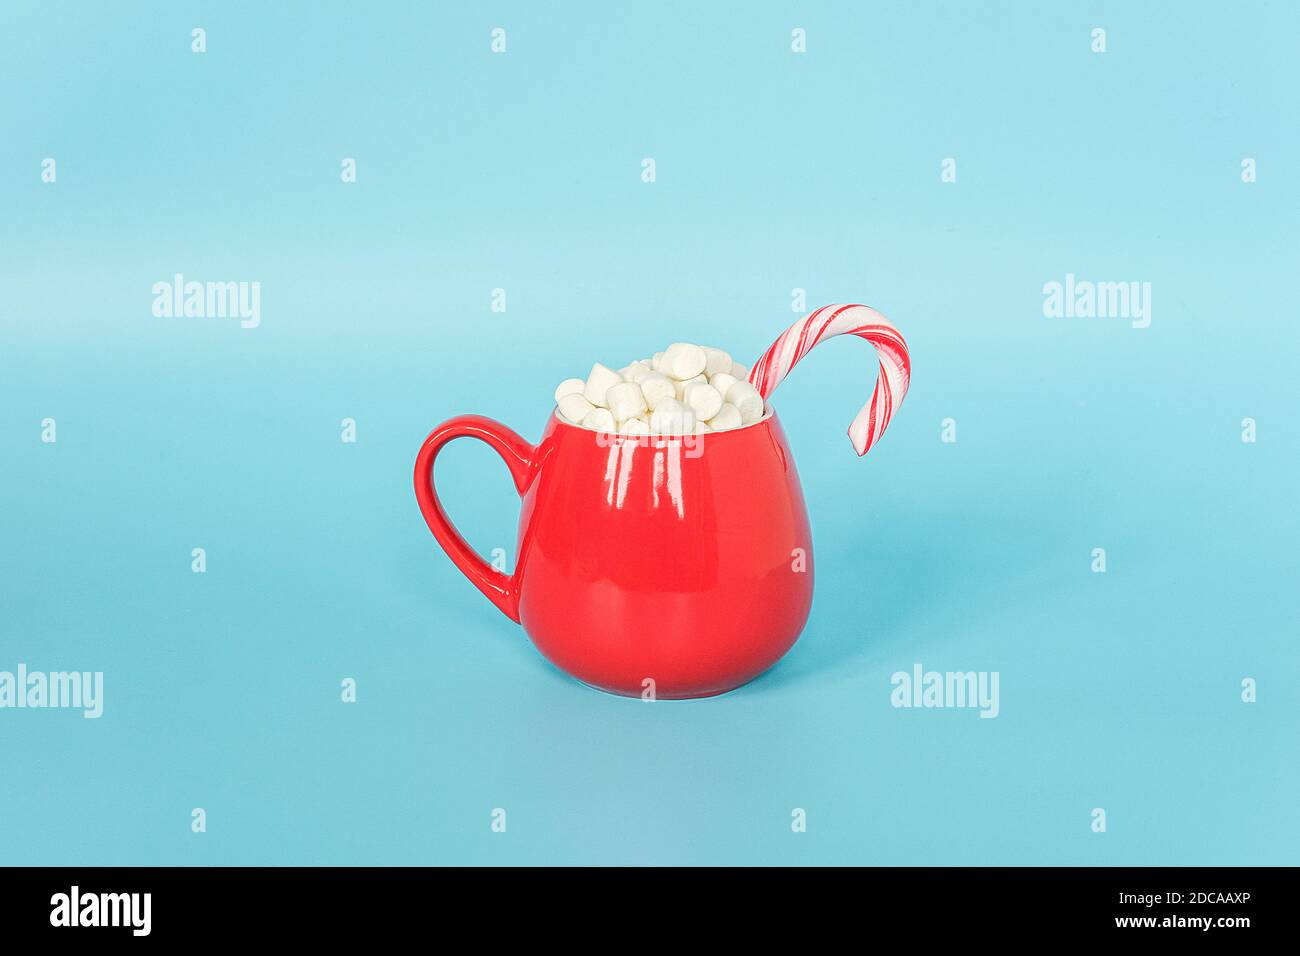 Grande coppa rossa di marshmallows con canna di lollipop su sfondo blu. Buon Natale o buon anno concetto. Stile minimo, Vista superiore, disposizione piatta, Copia Foto Stock